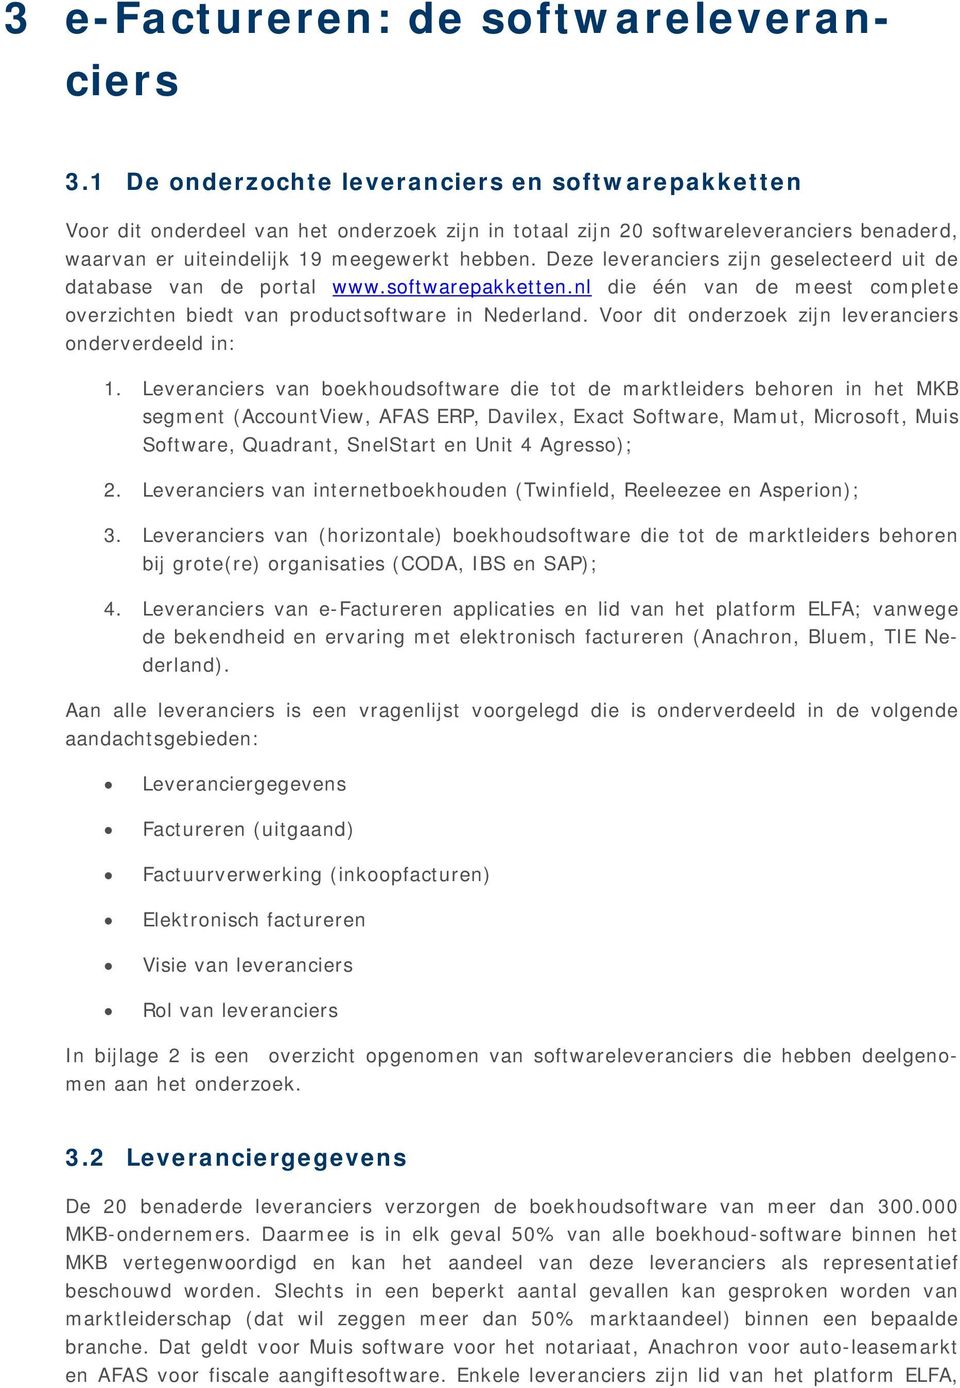 Deze leveranciers zijn geselecteerd uit de database van de portal www.softwarepakketten.nl die één van de meest complete overzichten biedt van productsoftware in Nederland.